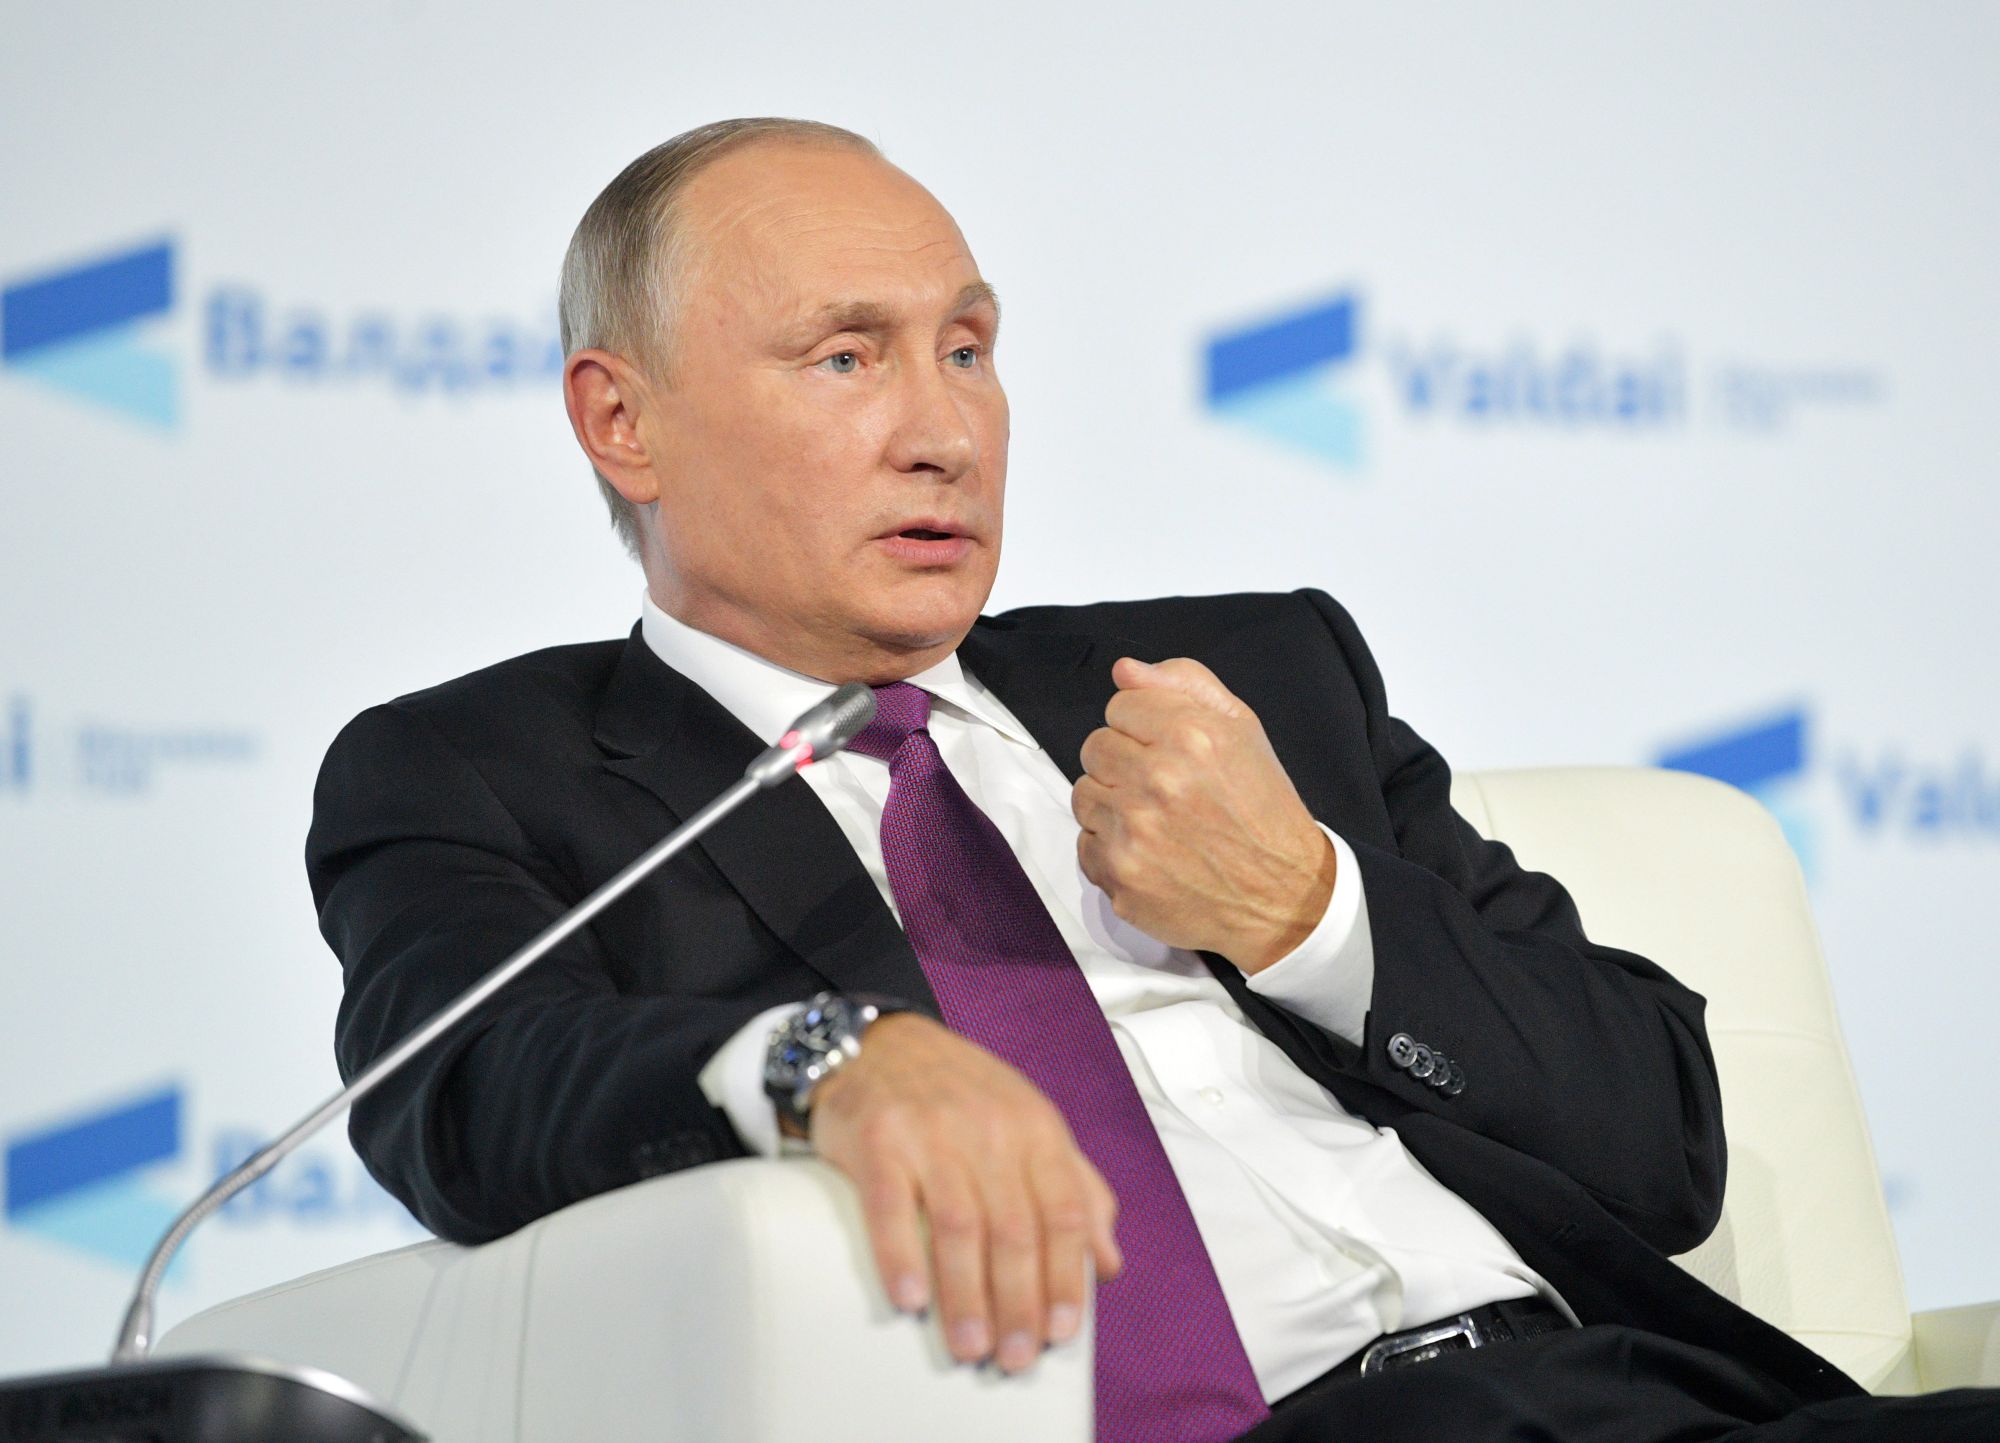 Szocsi, 2017. október 19. Vlagyimir Putyin orosz elnök beszél az évente rendezett Valdaj nemzetközi vitaklub tanácskozásán Szocsiban 2017. október 19-én. (MTI/EPA/AP pool/Alekszandr Zemlianicsenko)